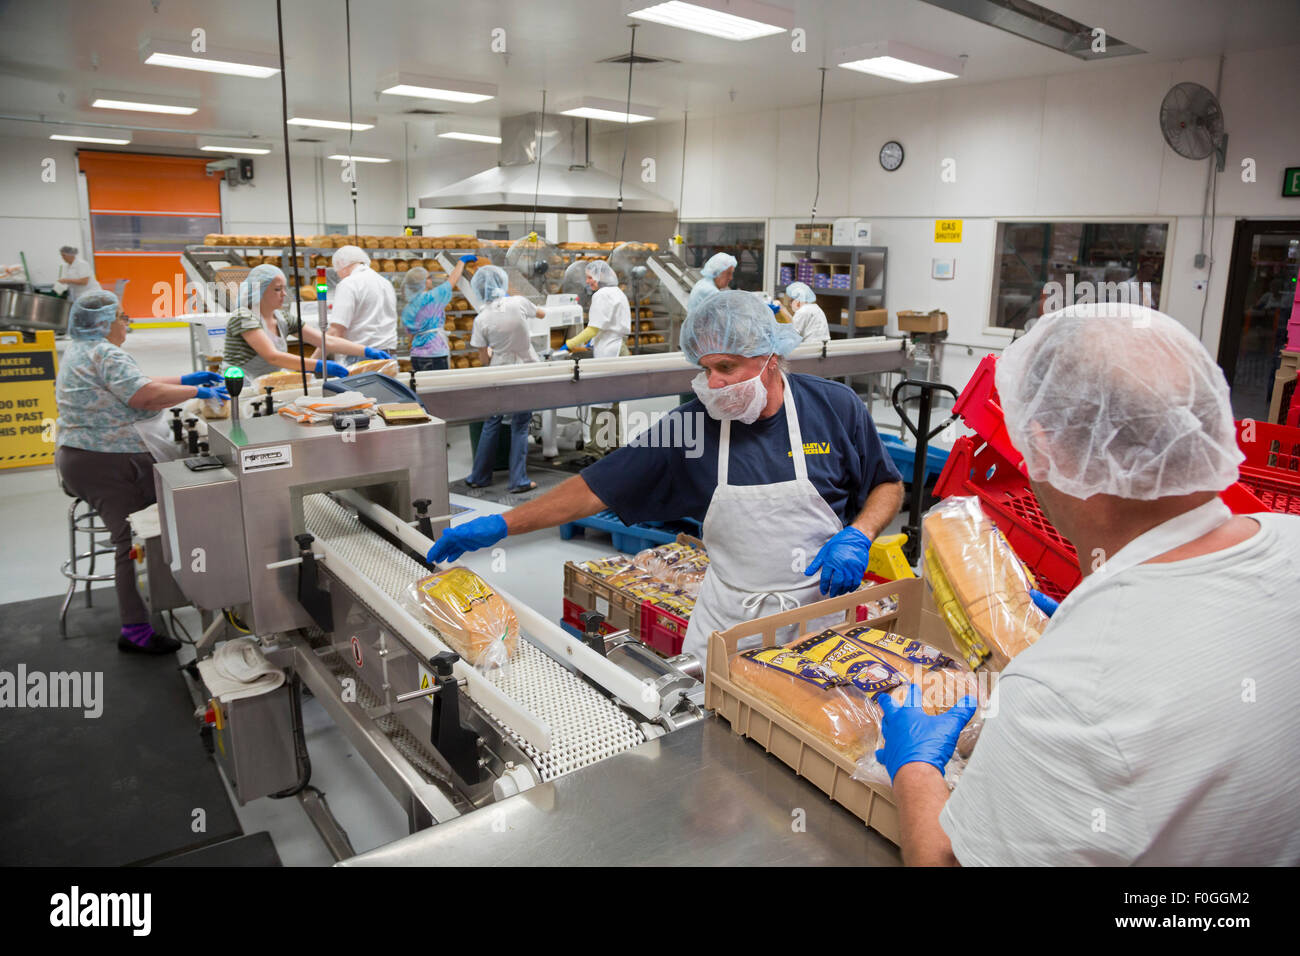 Salt Lake City, Utah - bénévoles travaillent dans la boulangerie à l'Église mormone Bien-être du complexe carré. Banque D'Images